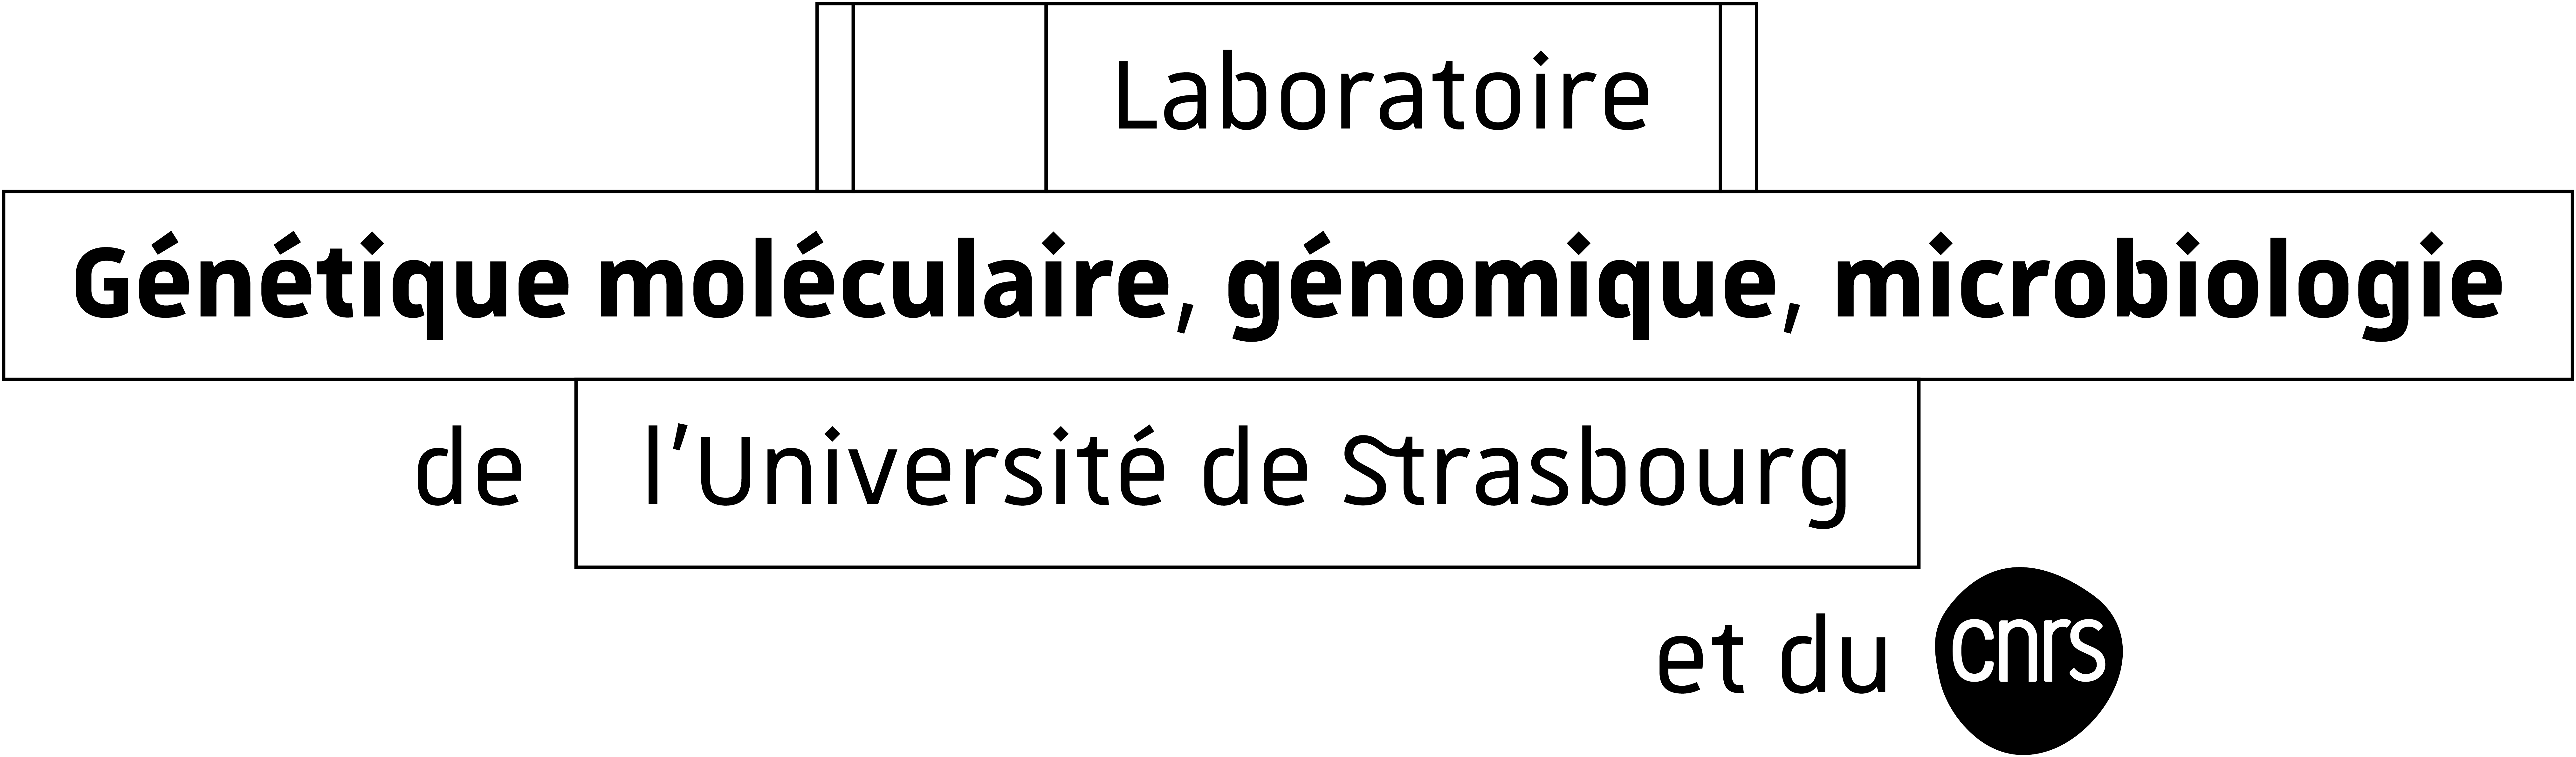 Logo Laboratoire de Génétique moléculaire, génomique, microbiologie de l'Université de Strasbourg